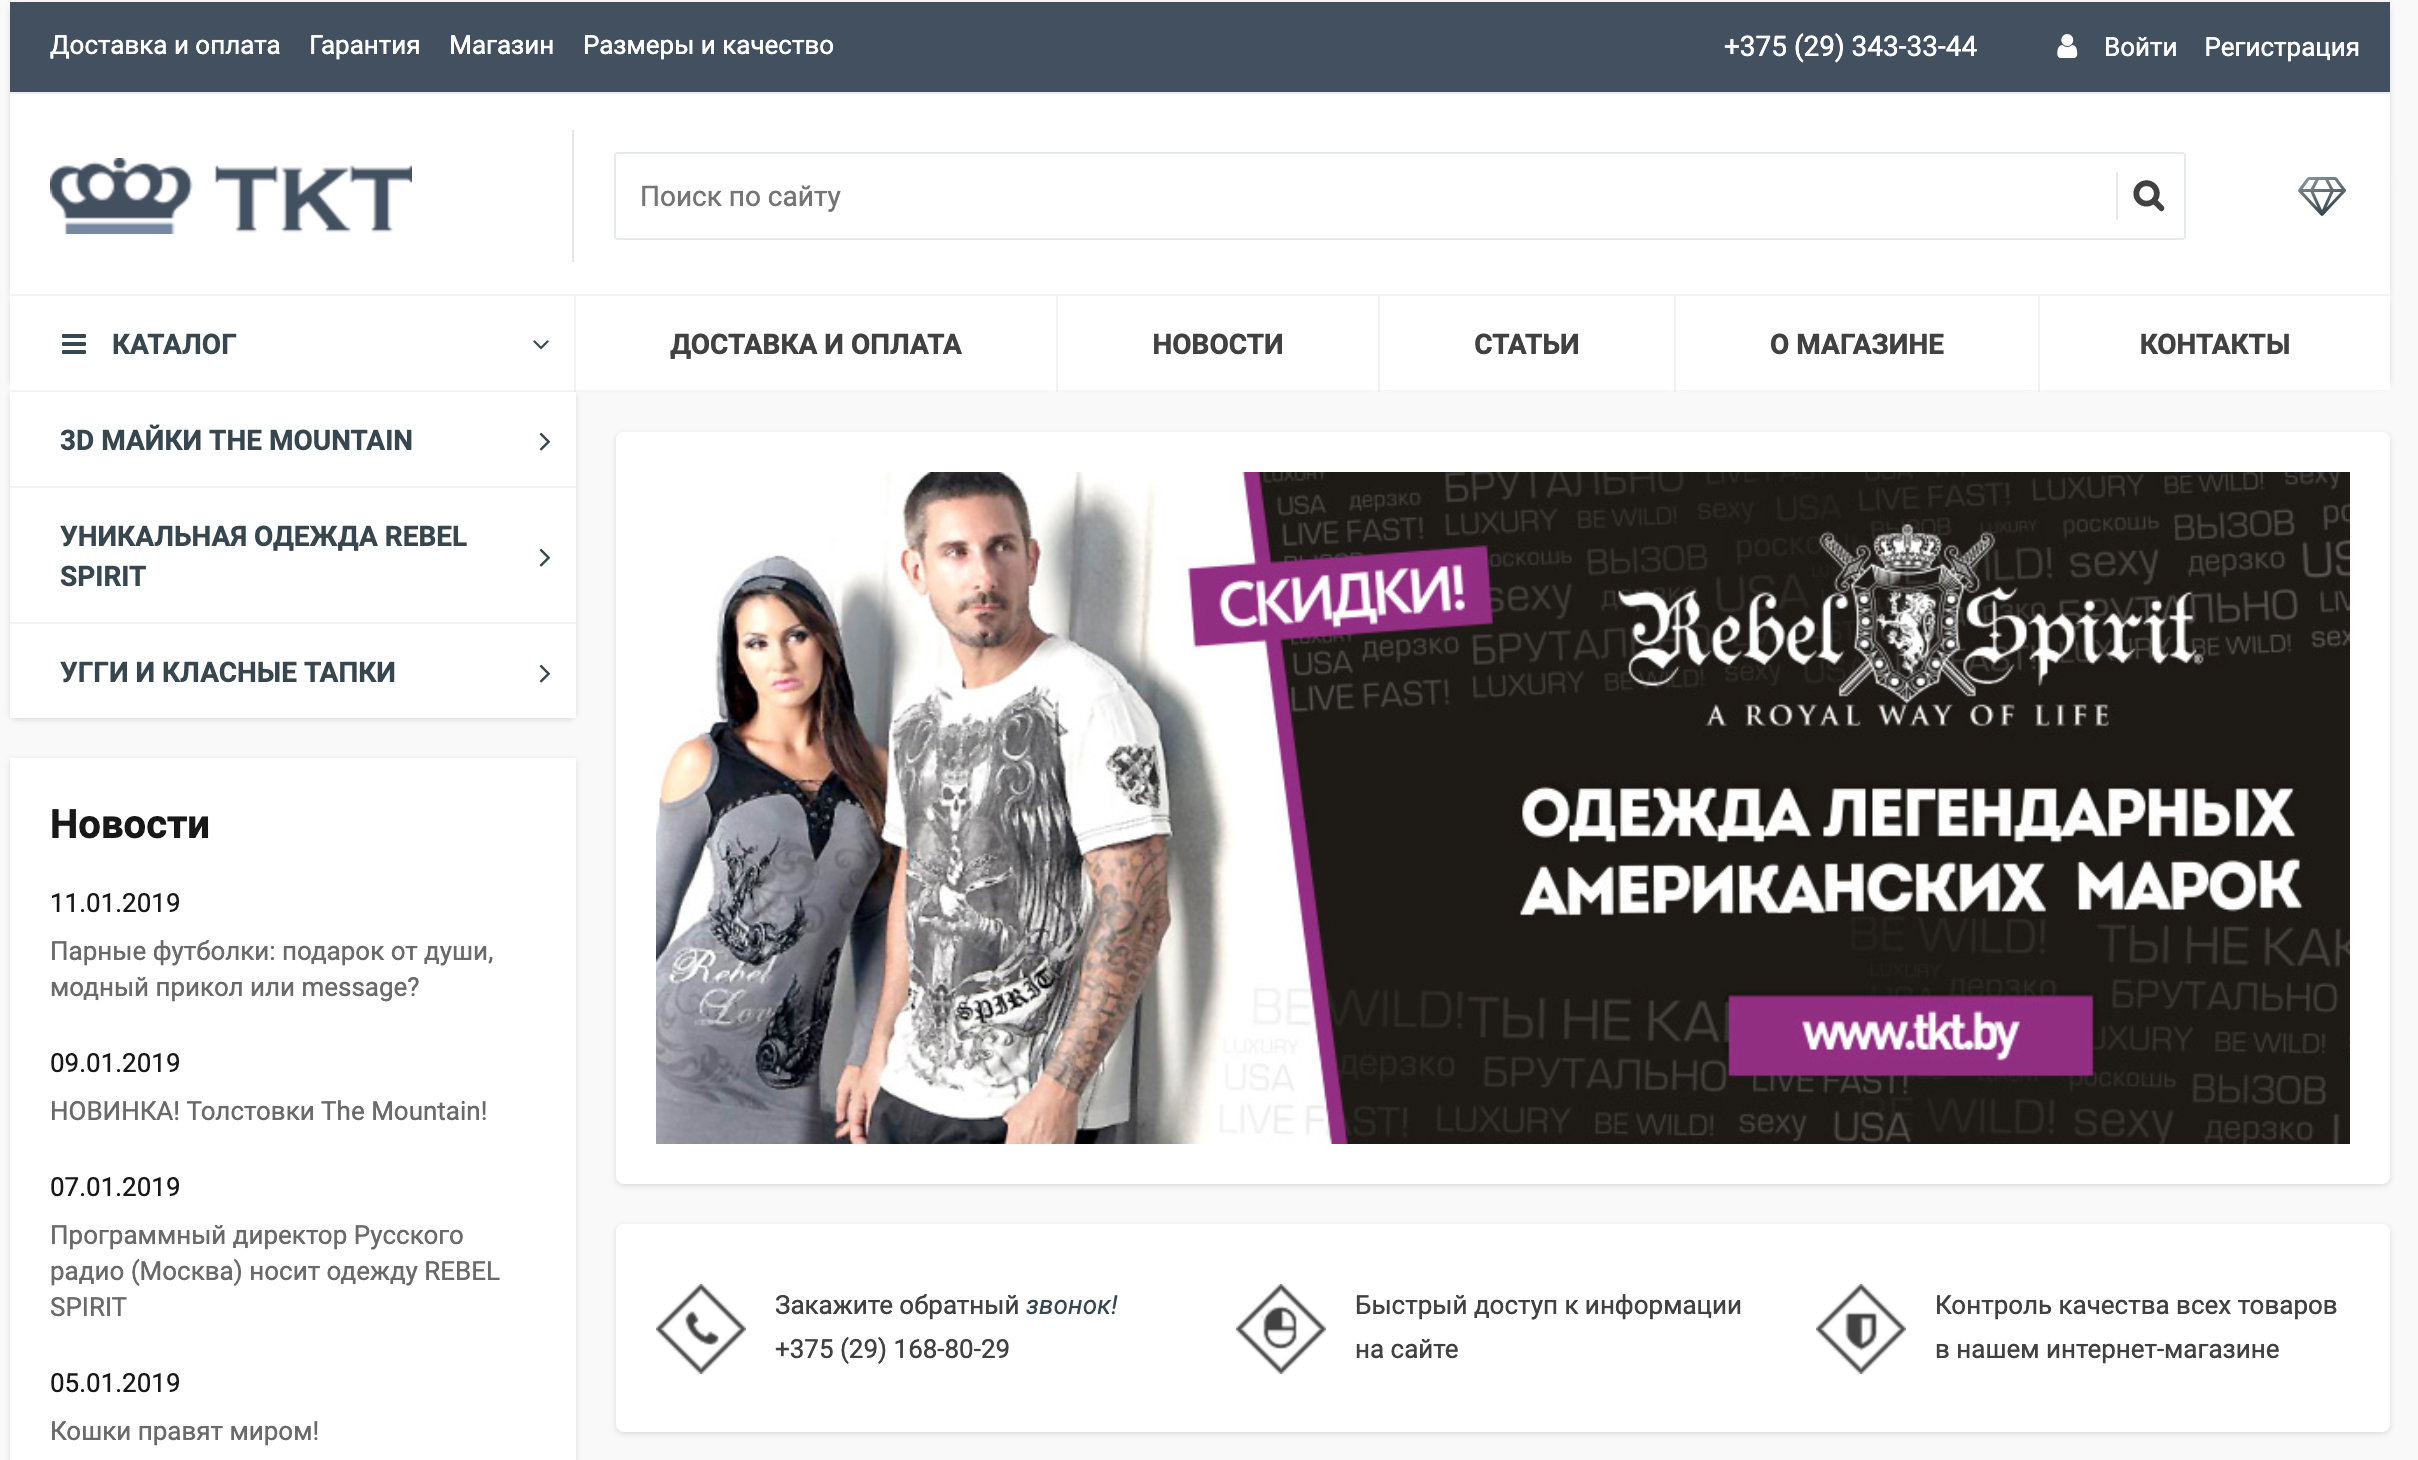 интернет-магазин брендовой одежды tkt.by